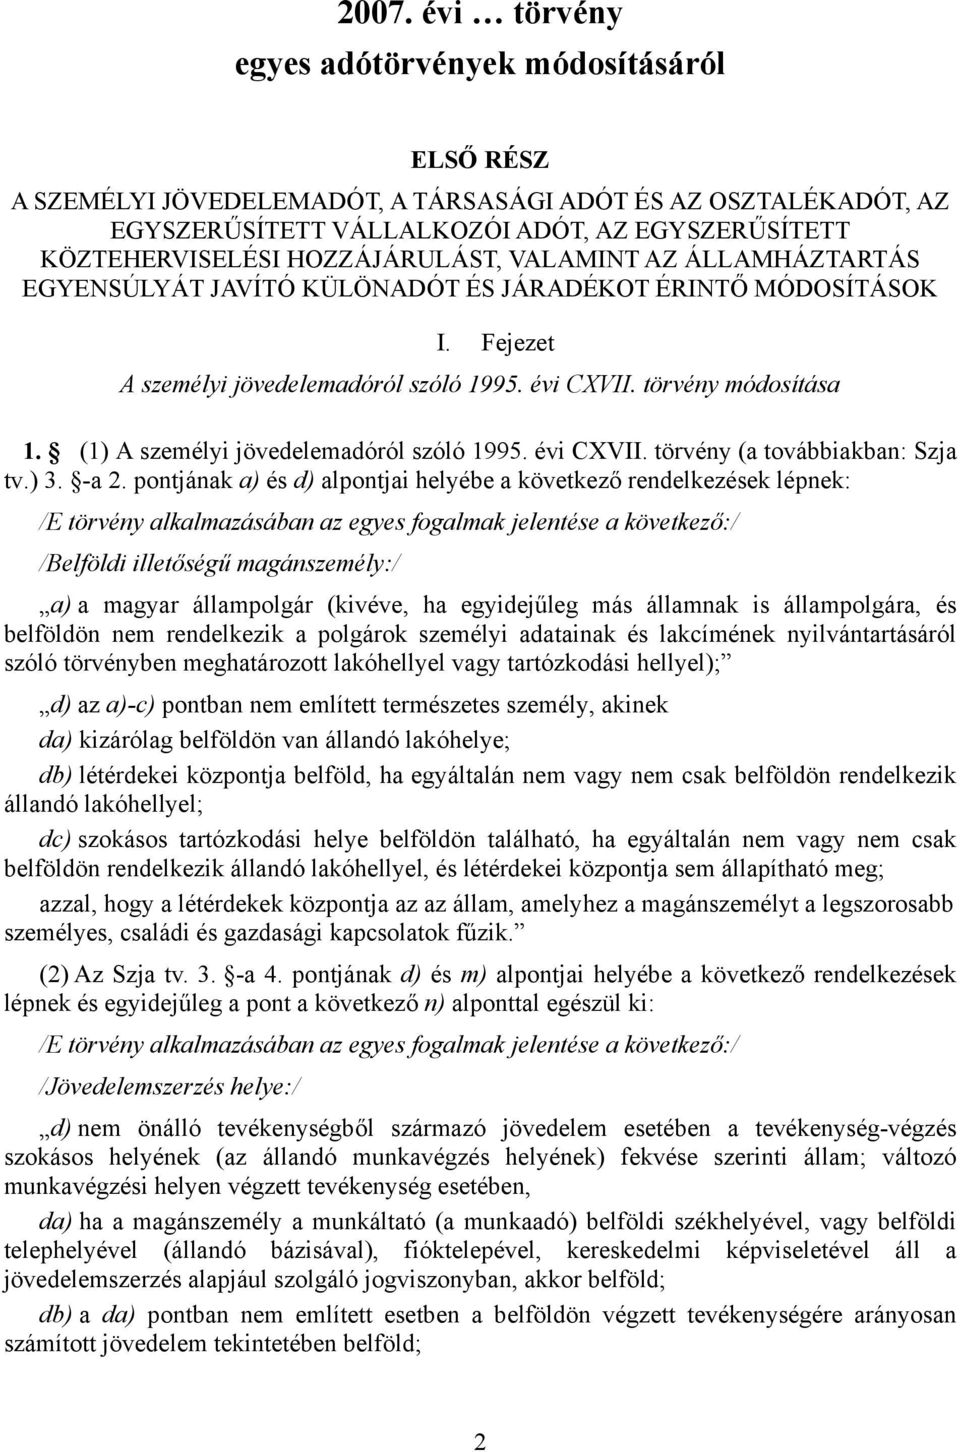 (1) A személyi jövedelemadóról szóló 1995. évi CXVII. törvény (a továbbiakban: Szja tv.) 3. -a 2.